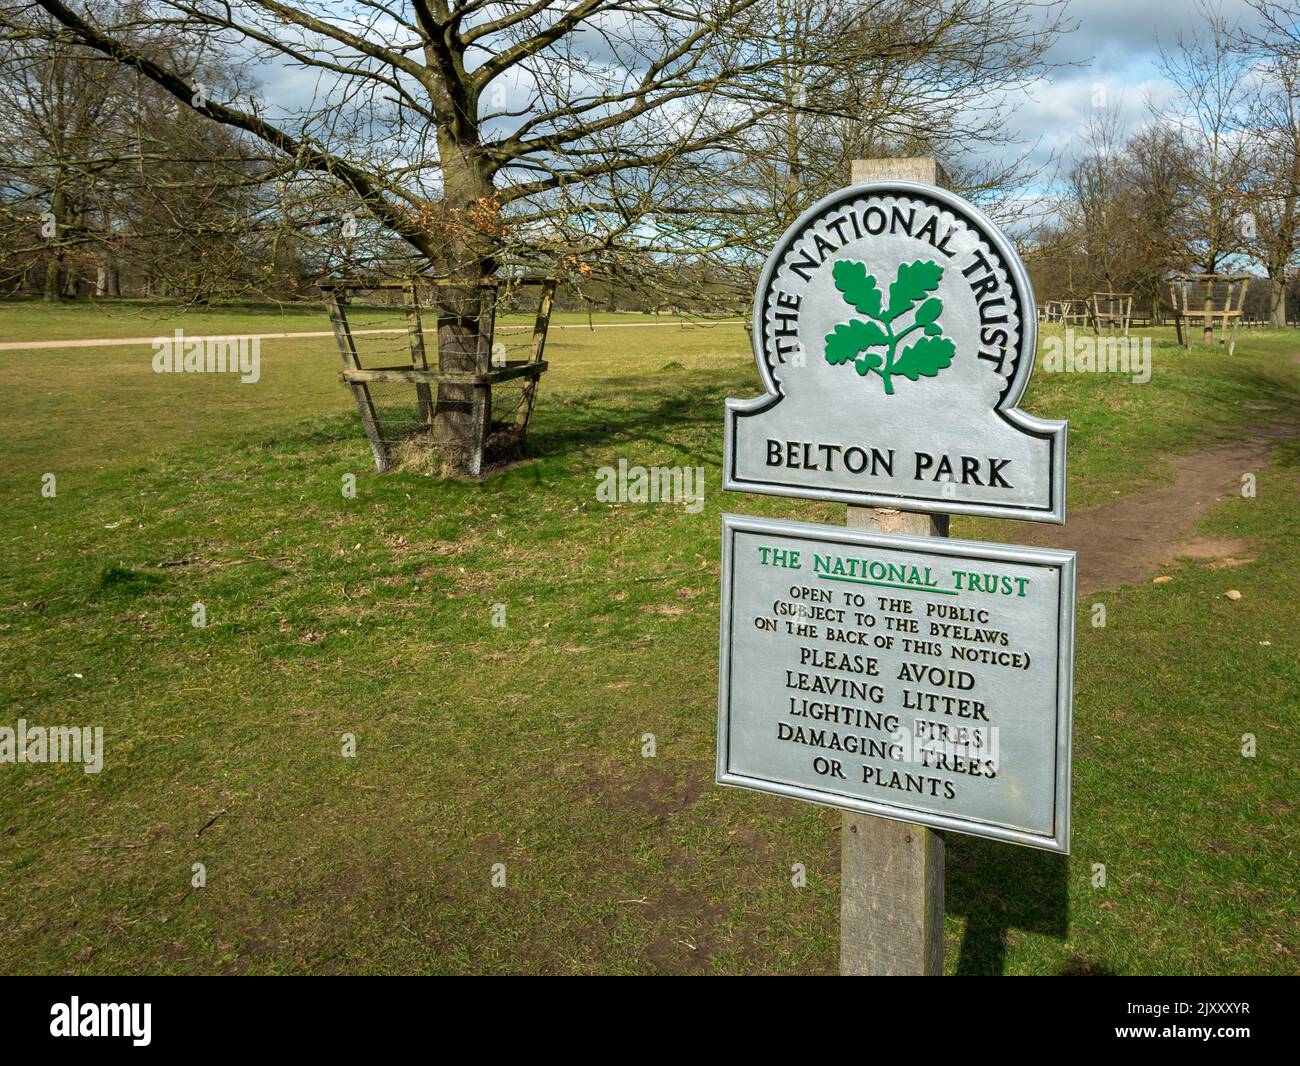 Nouveau, propre, lumineux, fraîchement peint, panneau National Trust à l'entrée de Belton Park avec arbres et parc derrière, Grantham, Angleterre, Royaume-Uni Banque D'Images